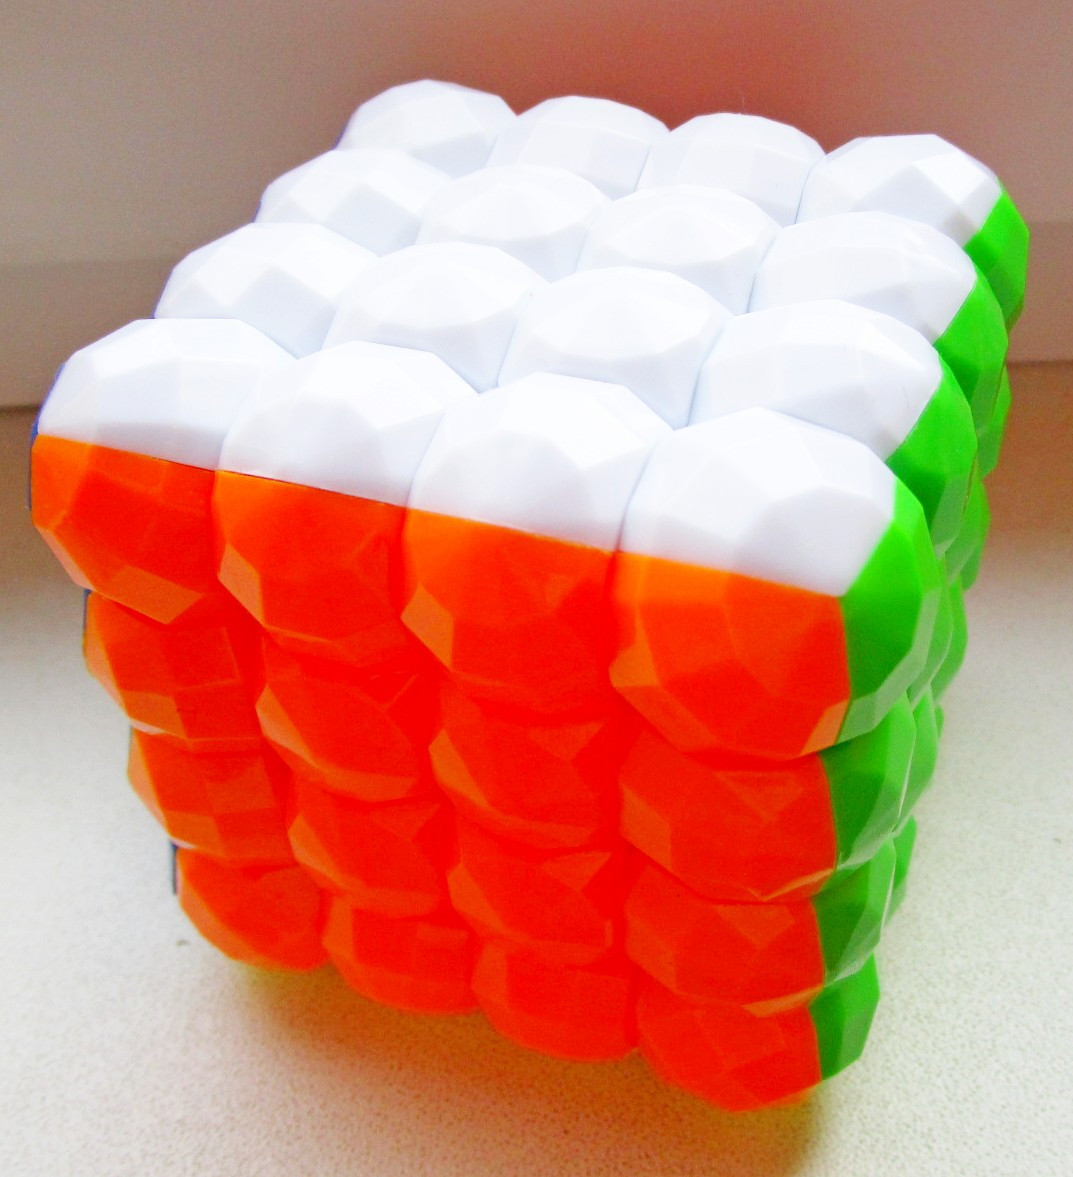 Головоломка "Кубик Рубика" (4x4x4)